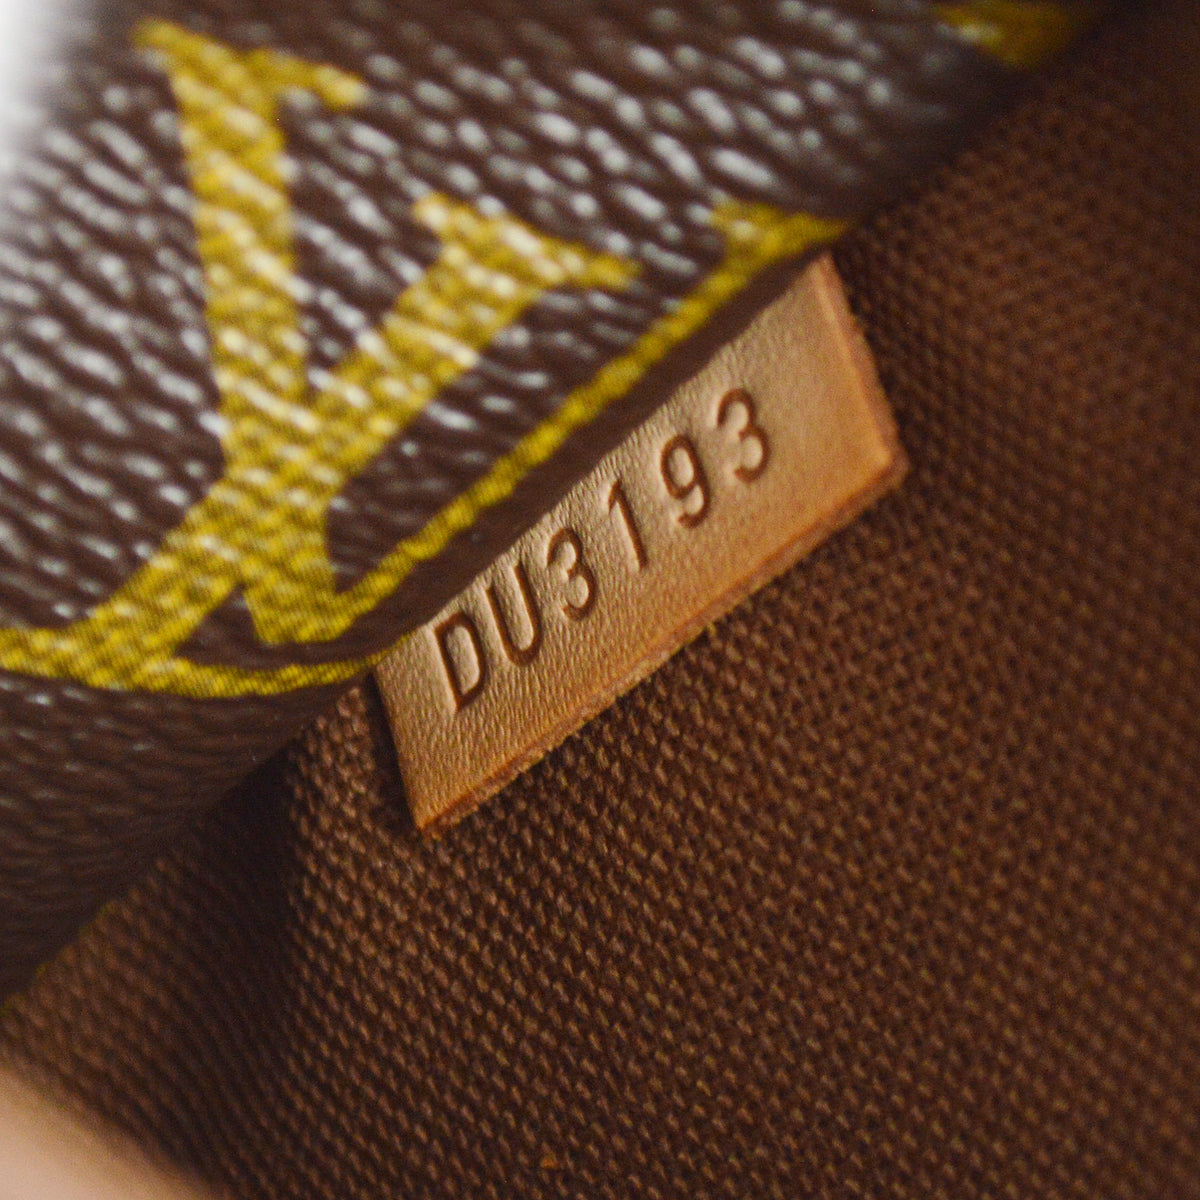 Louis Vuitton 2013 Totally PM Monogram M56688